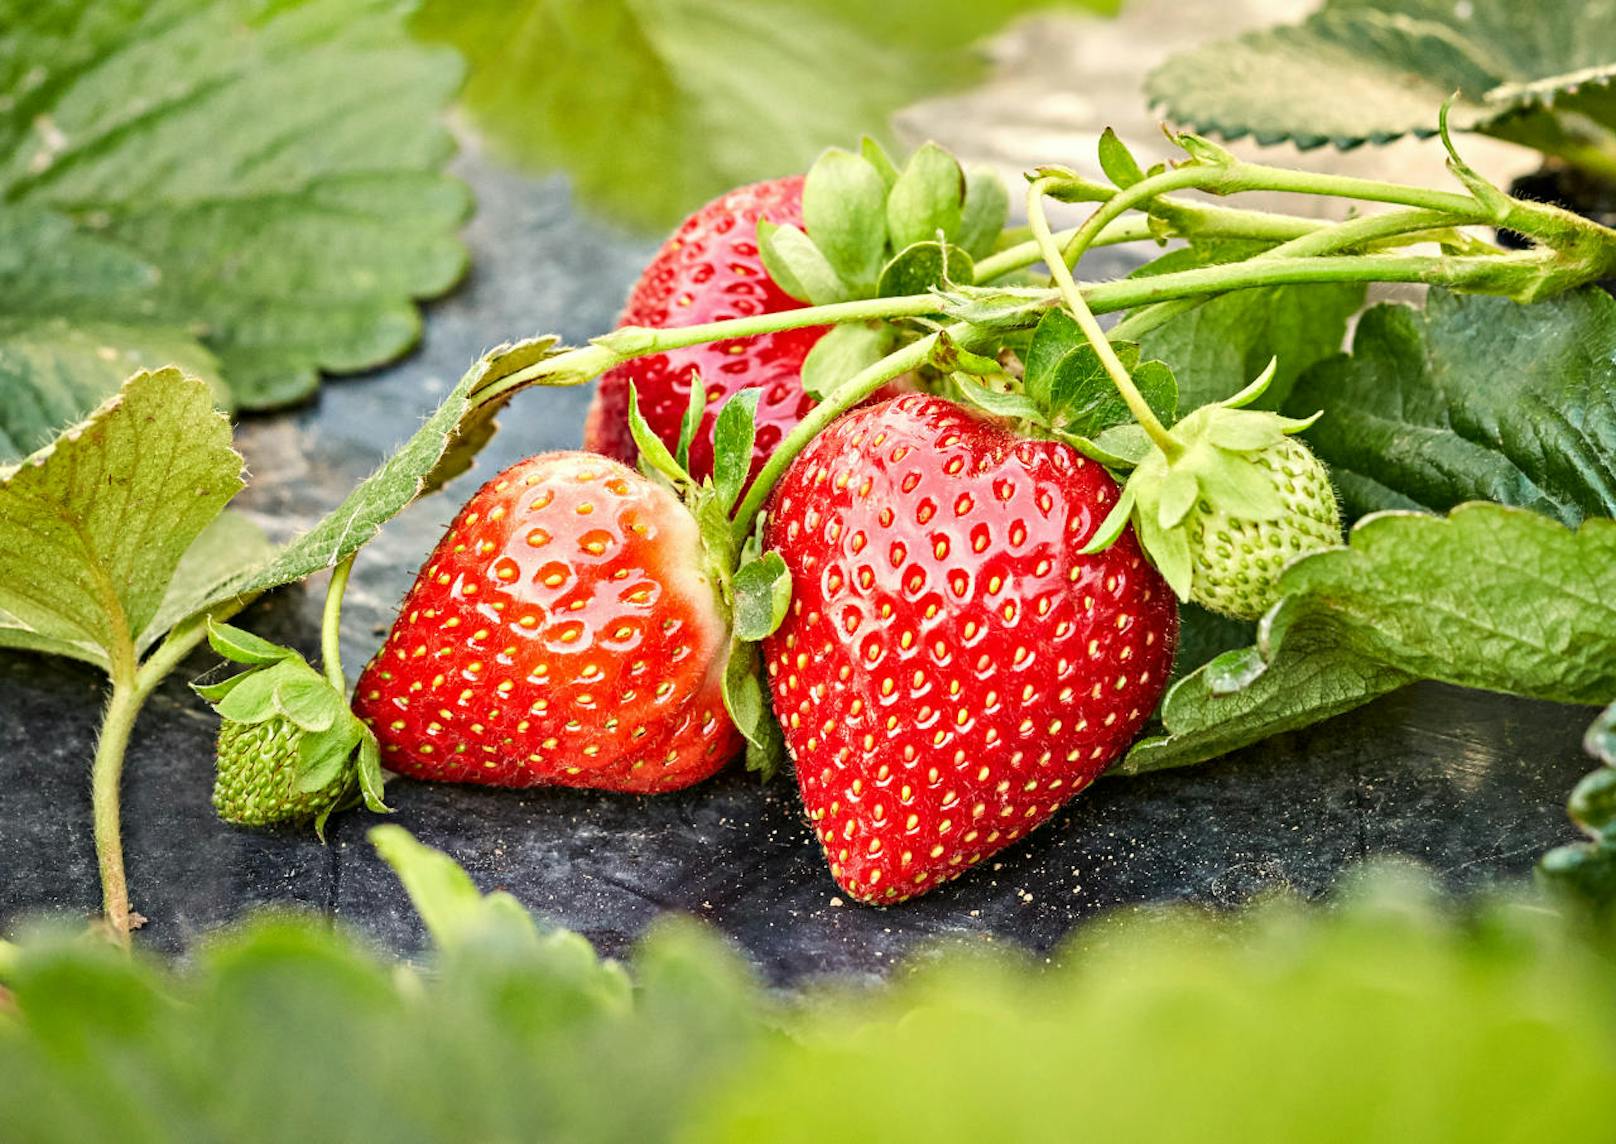 Erdbeeren selbst zu ziehen, ist keine Hexerei. Sie brauchen lediglich humusreichen und nahrhaften Boden. Um möglichst viele Früchte zu bekommen, sollten Erdbeeren zwischen Mitte Juli und
Ende August gepflanzt werden.